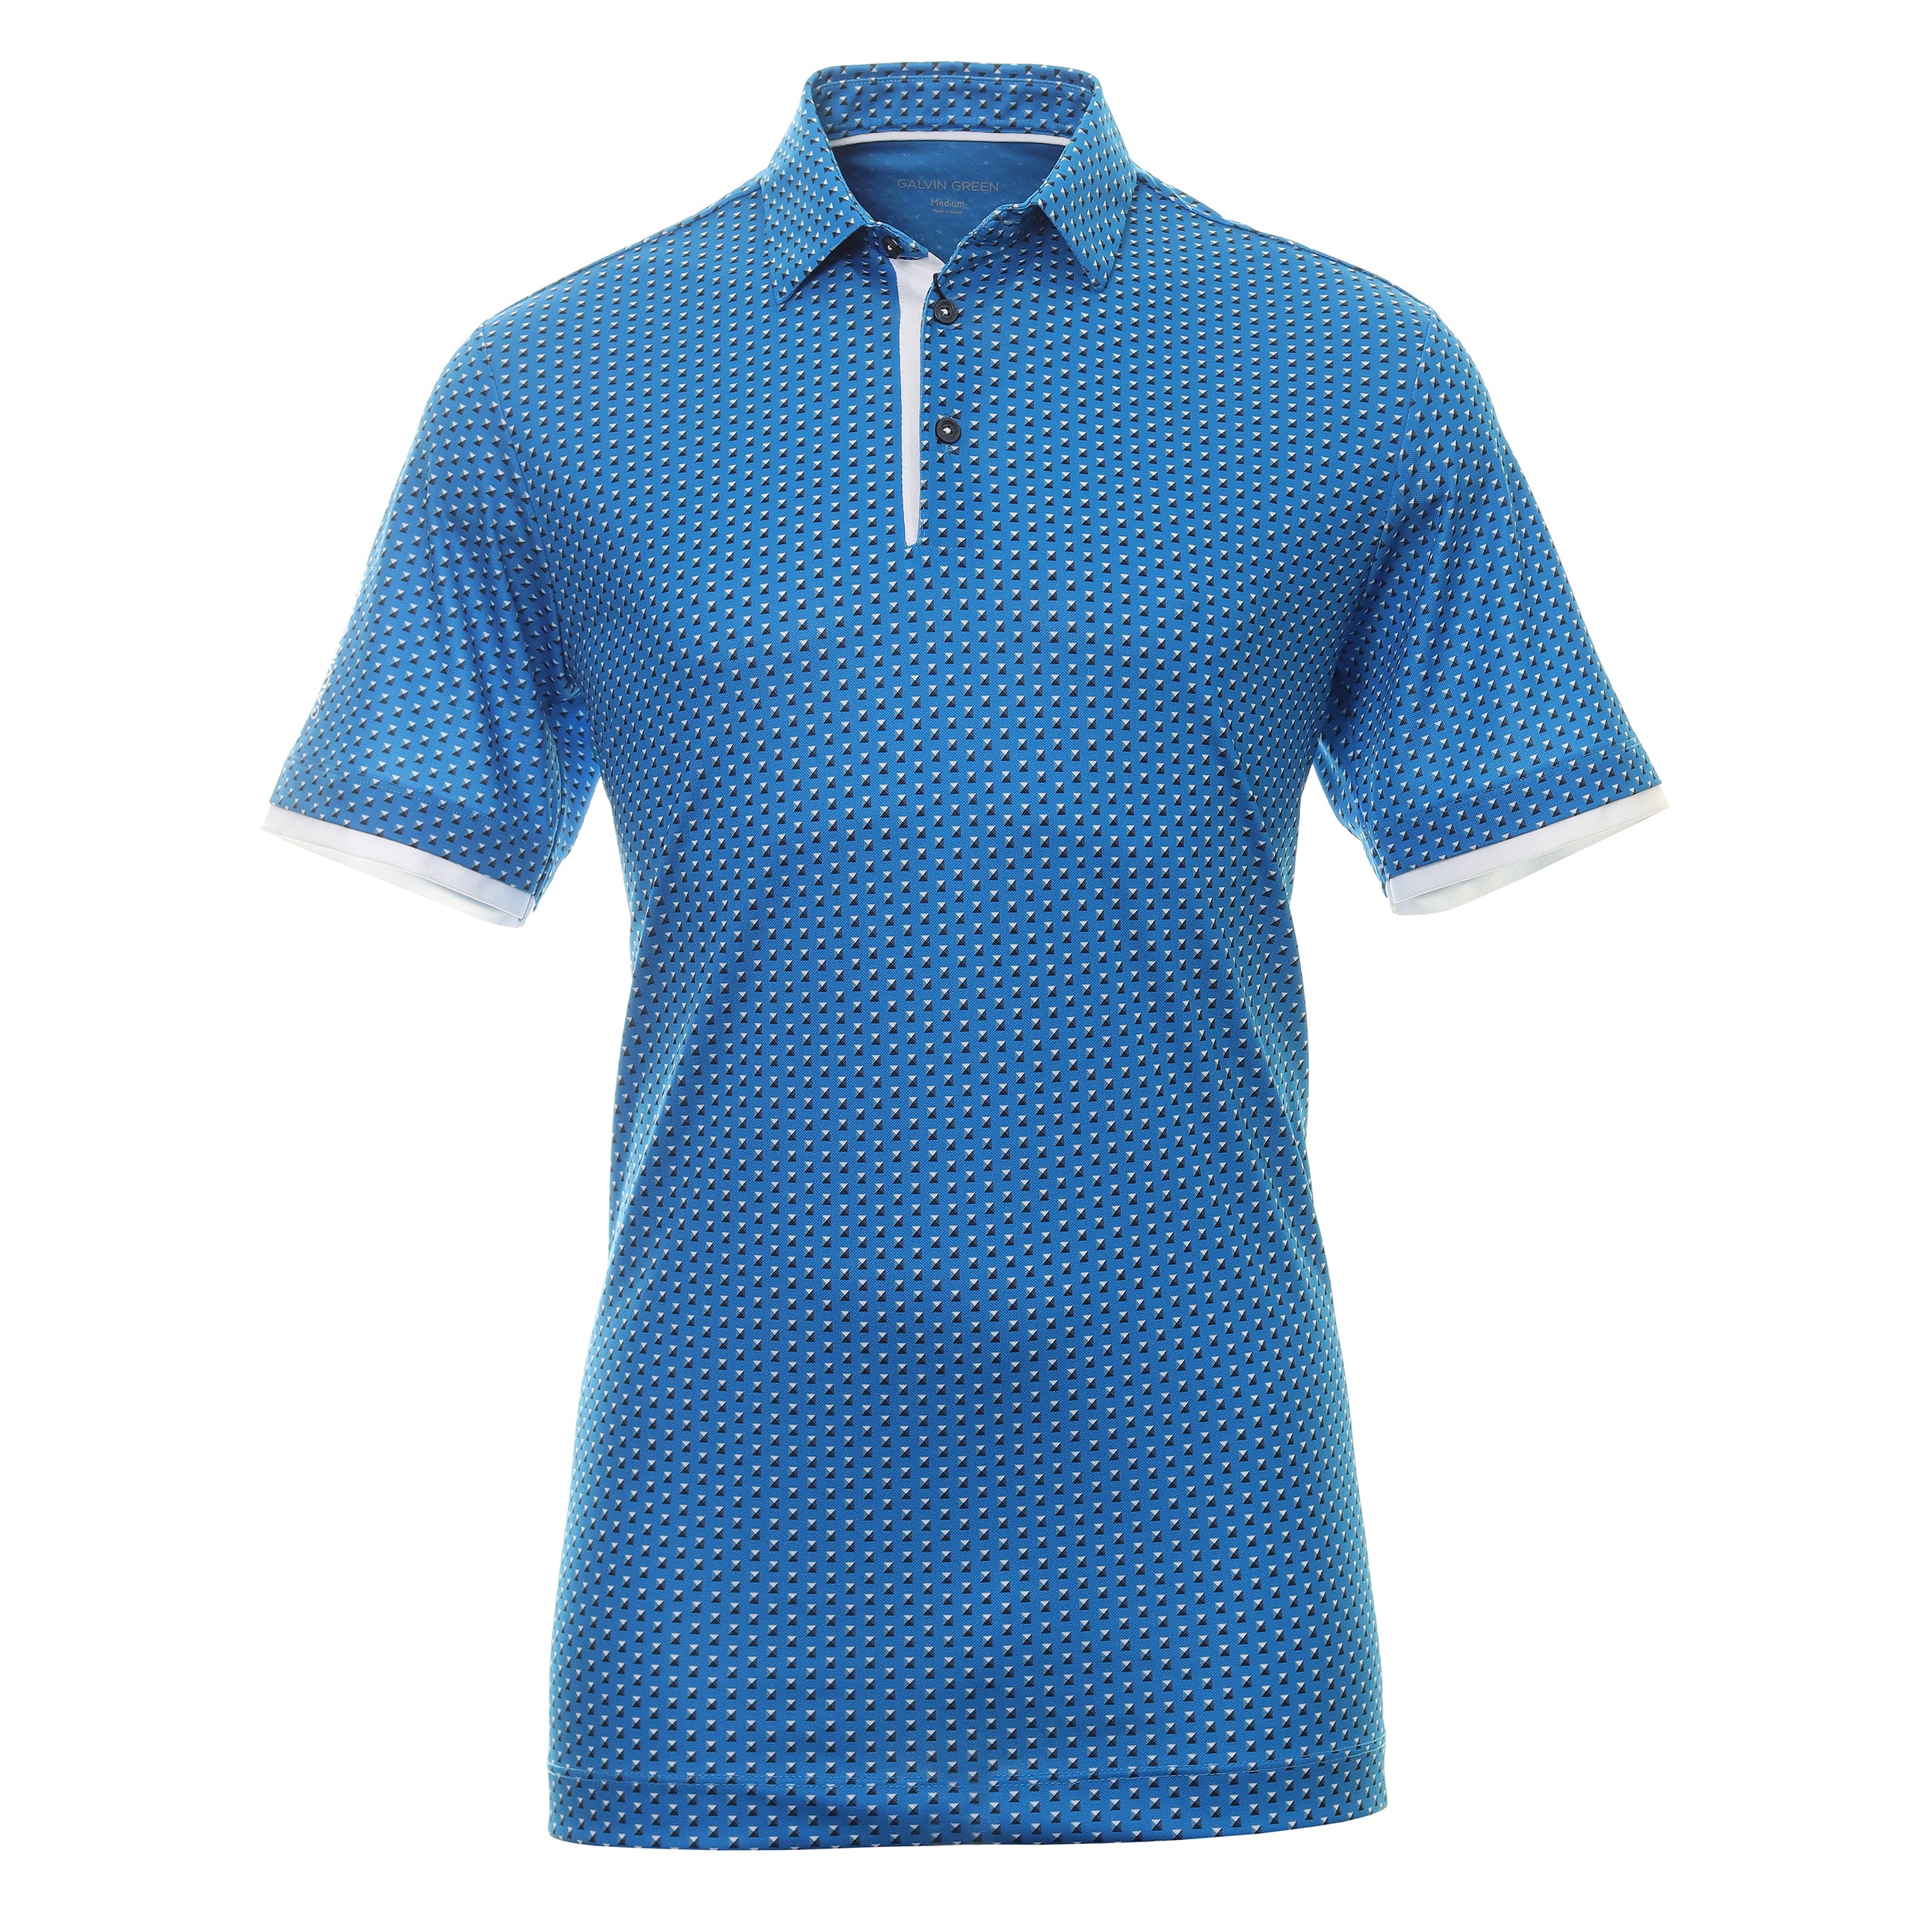 Galvin Green Mark Ventil8+ Golf Shirt G1371 Blue White 61 | Function18 ...